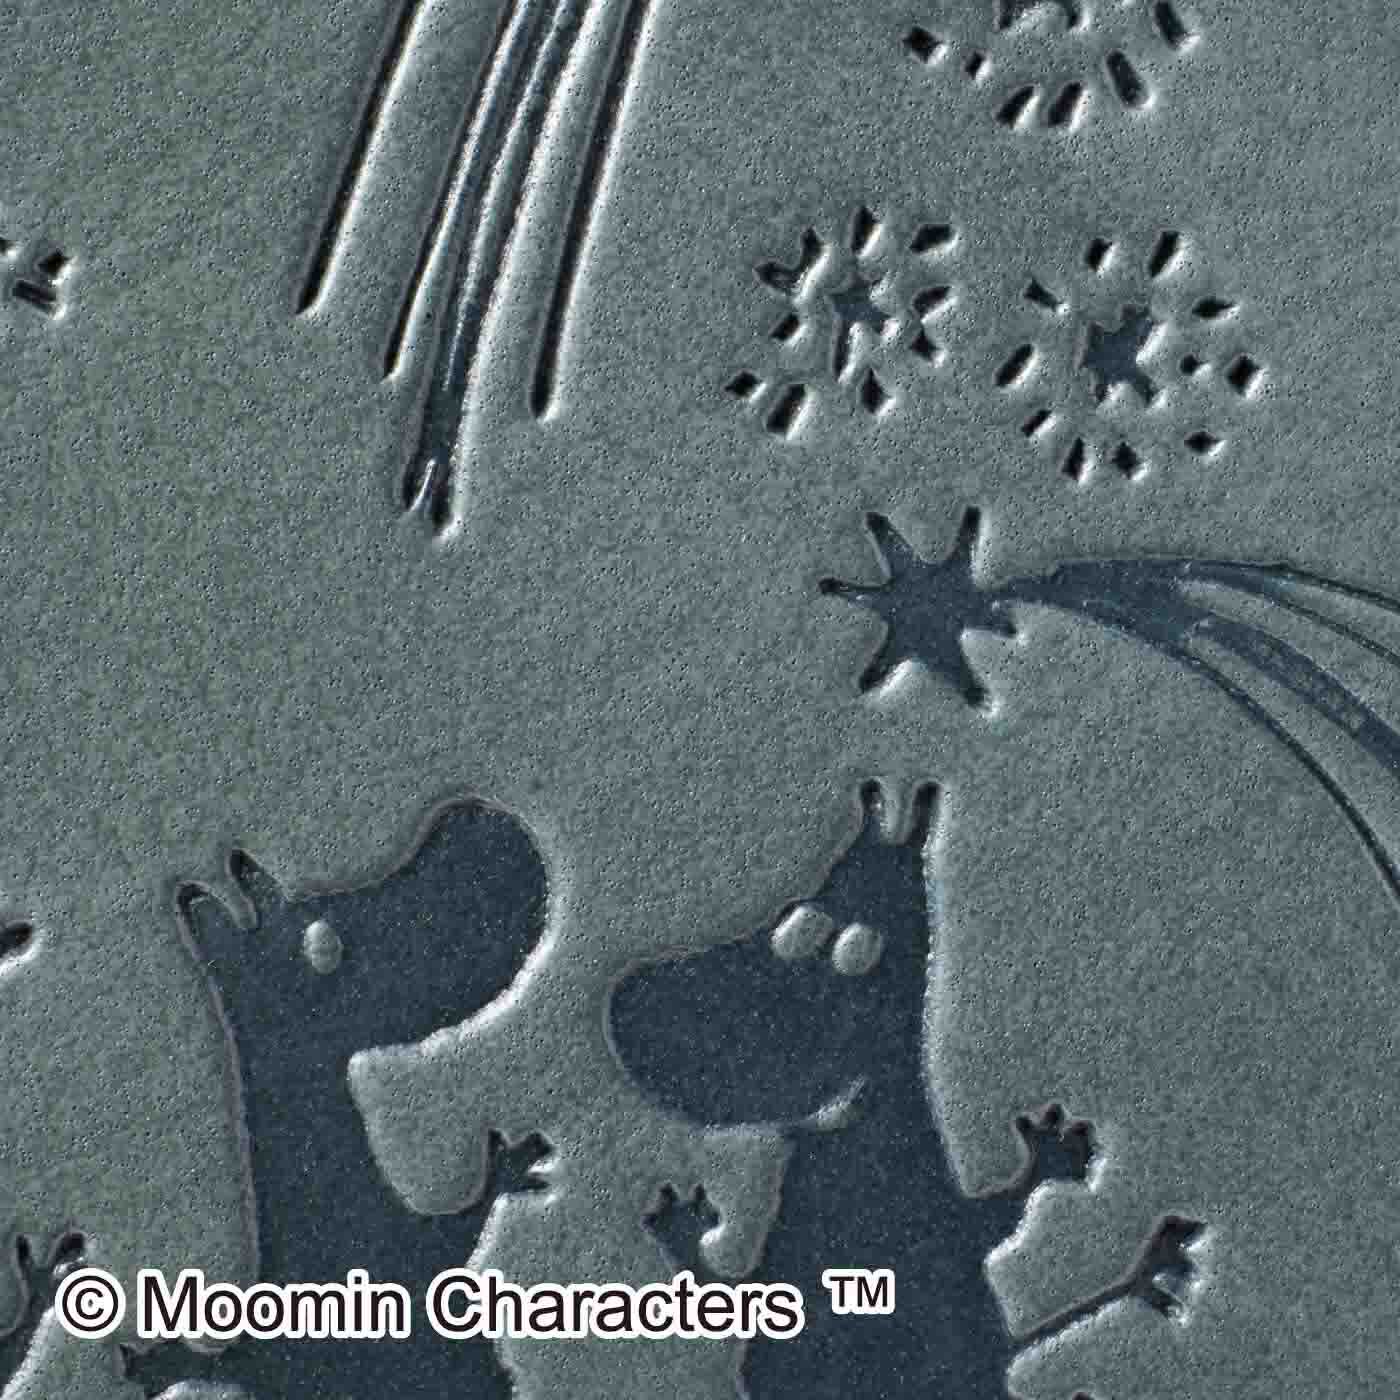 フェリシモの雑貨 Kraso|MOOMIN　ムーミン谷に星降る夜 小銭が見やすい長財布|月光をイメージしたモスブルー地にムーミン一家のイラストがきれいに刻印されています。